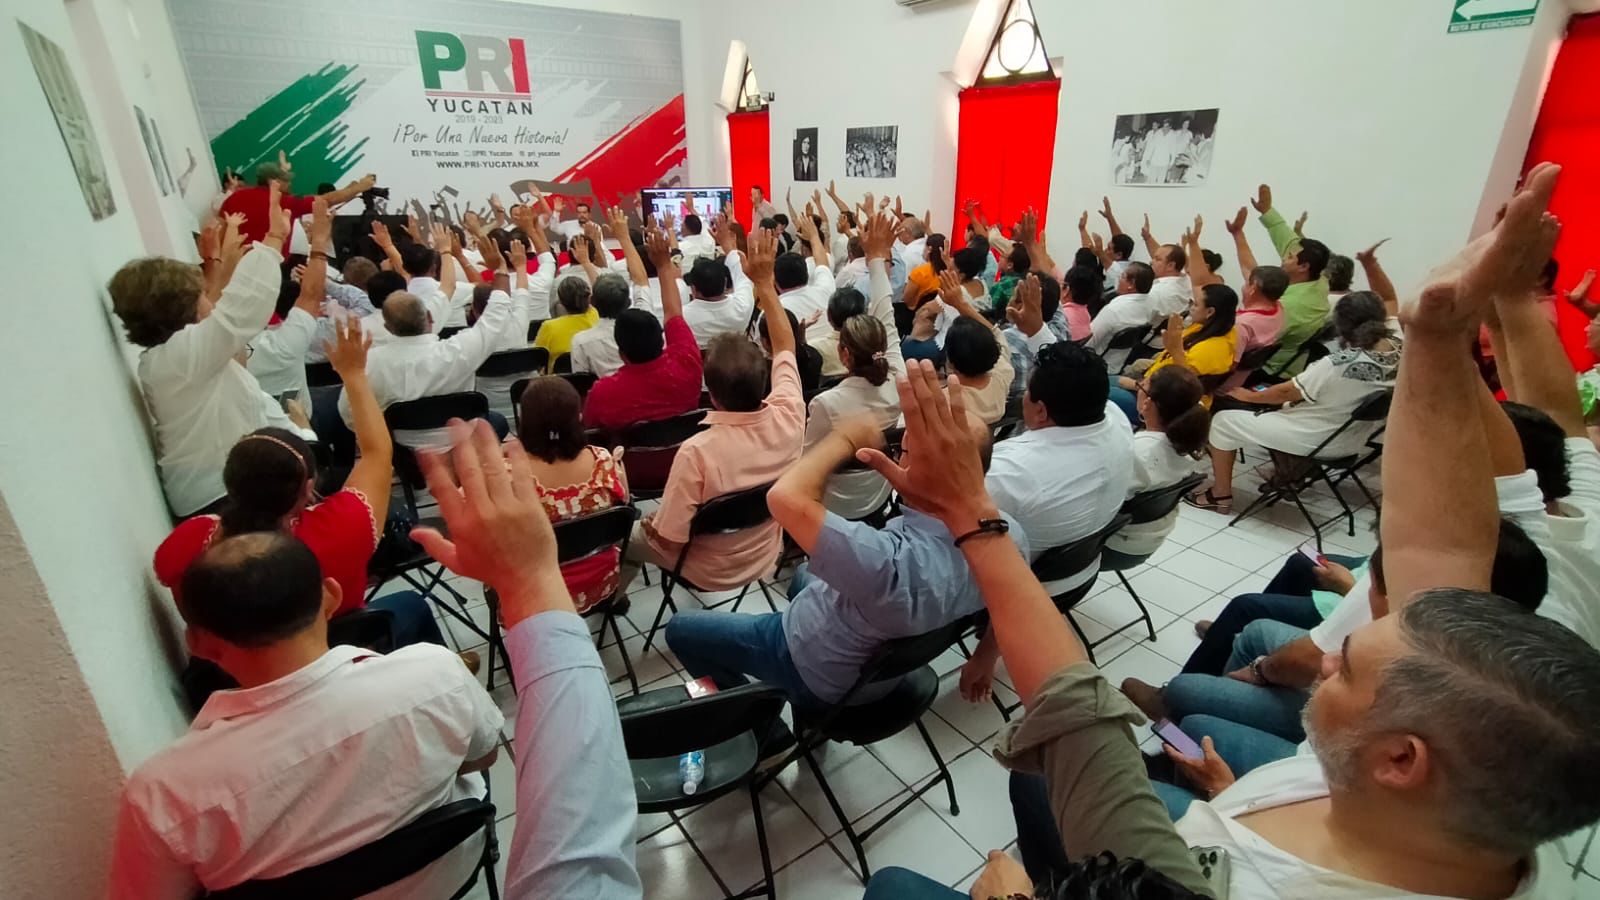 El PRI yucateco renovará su dirigencia mediante consulta directa a la base